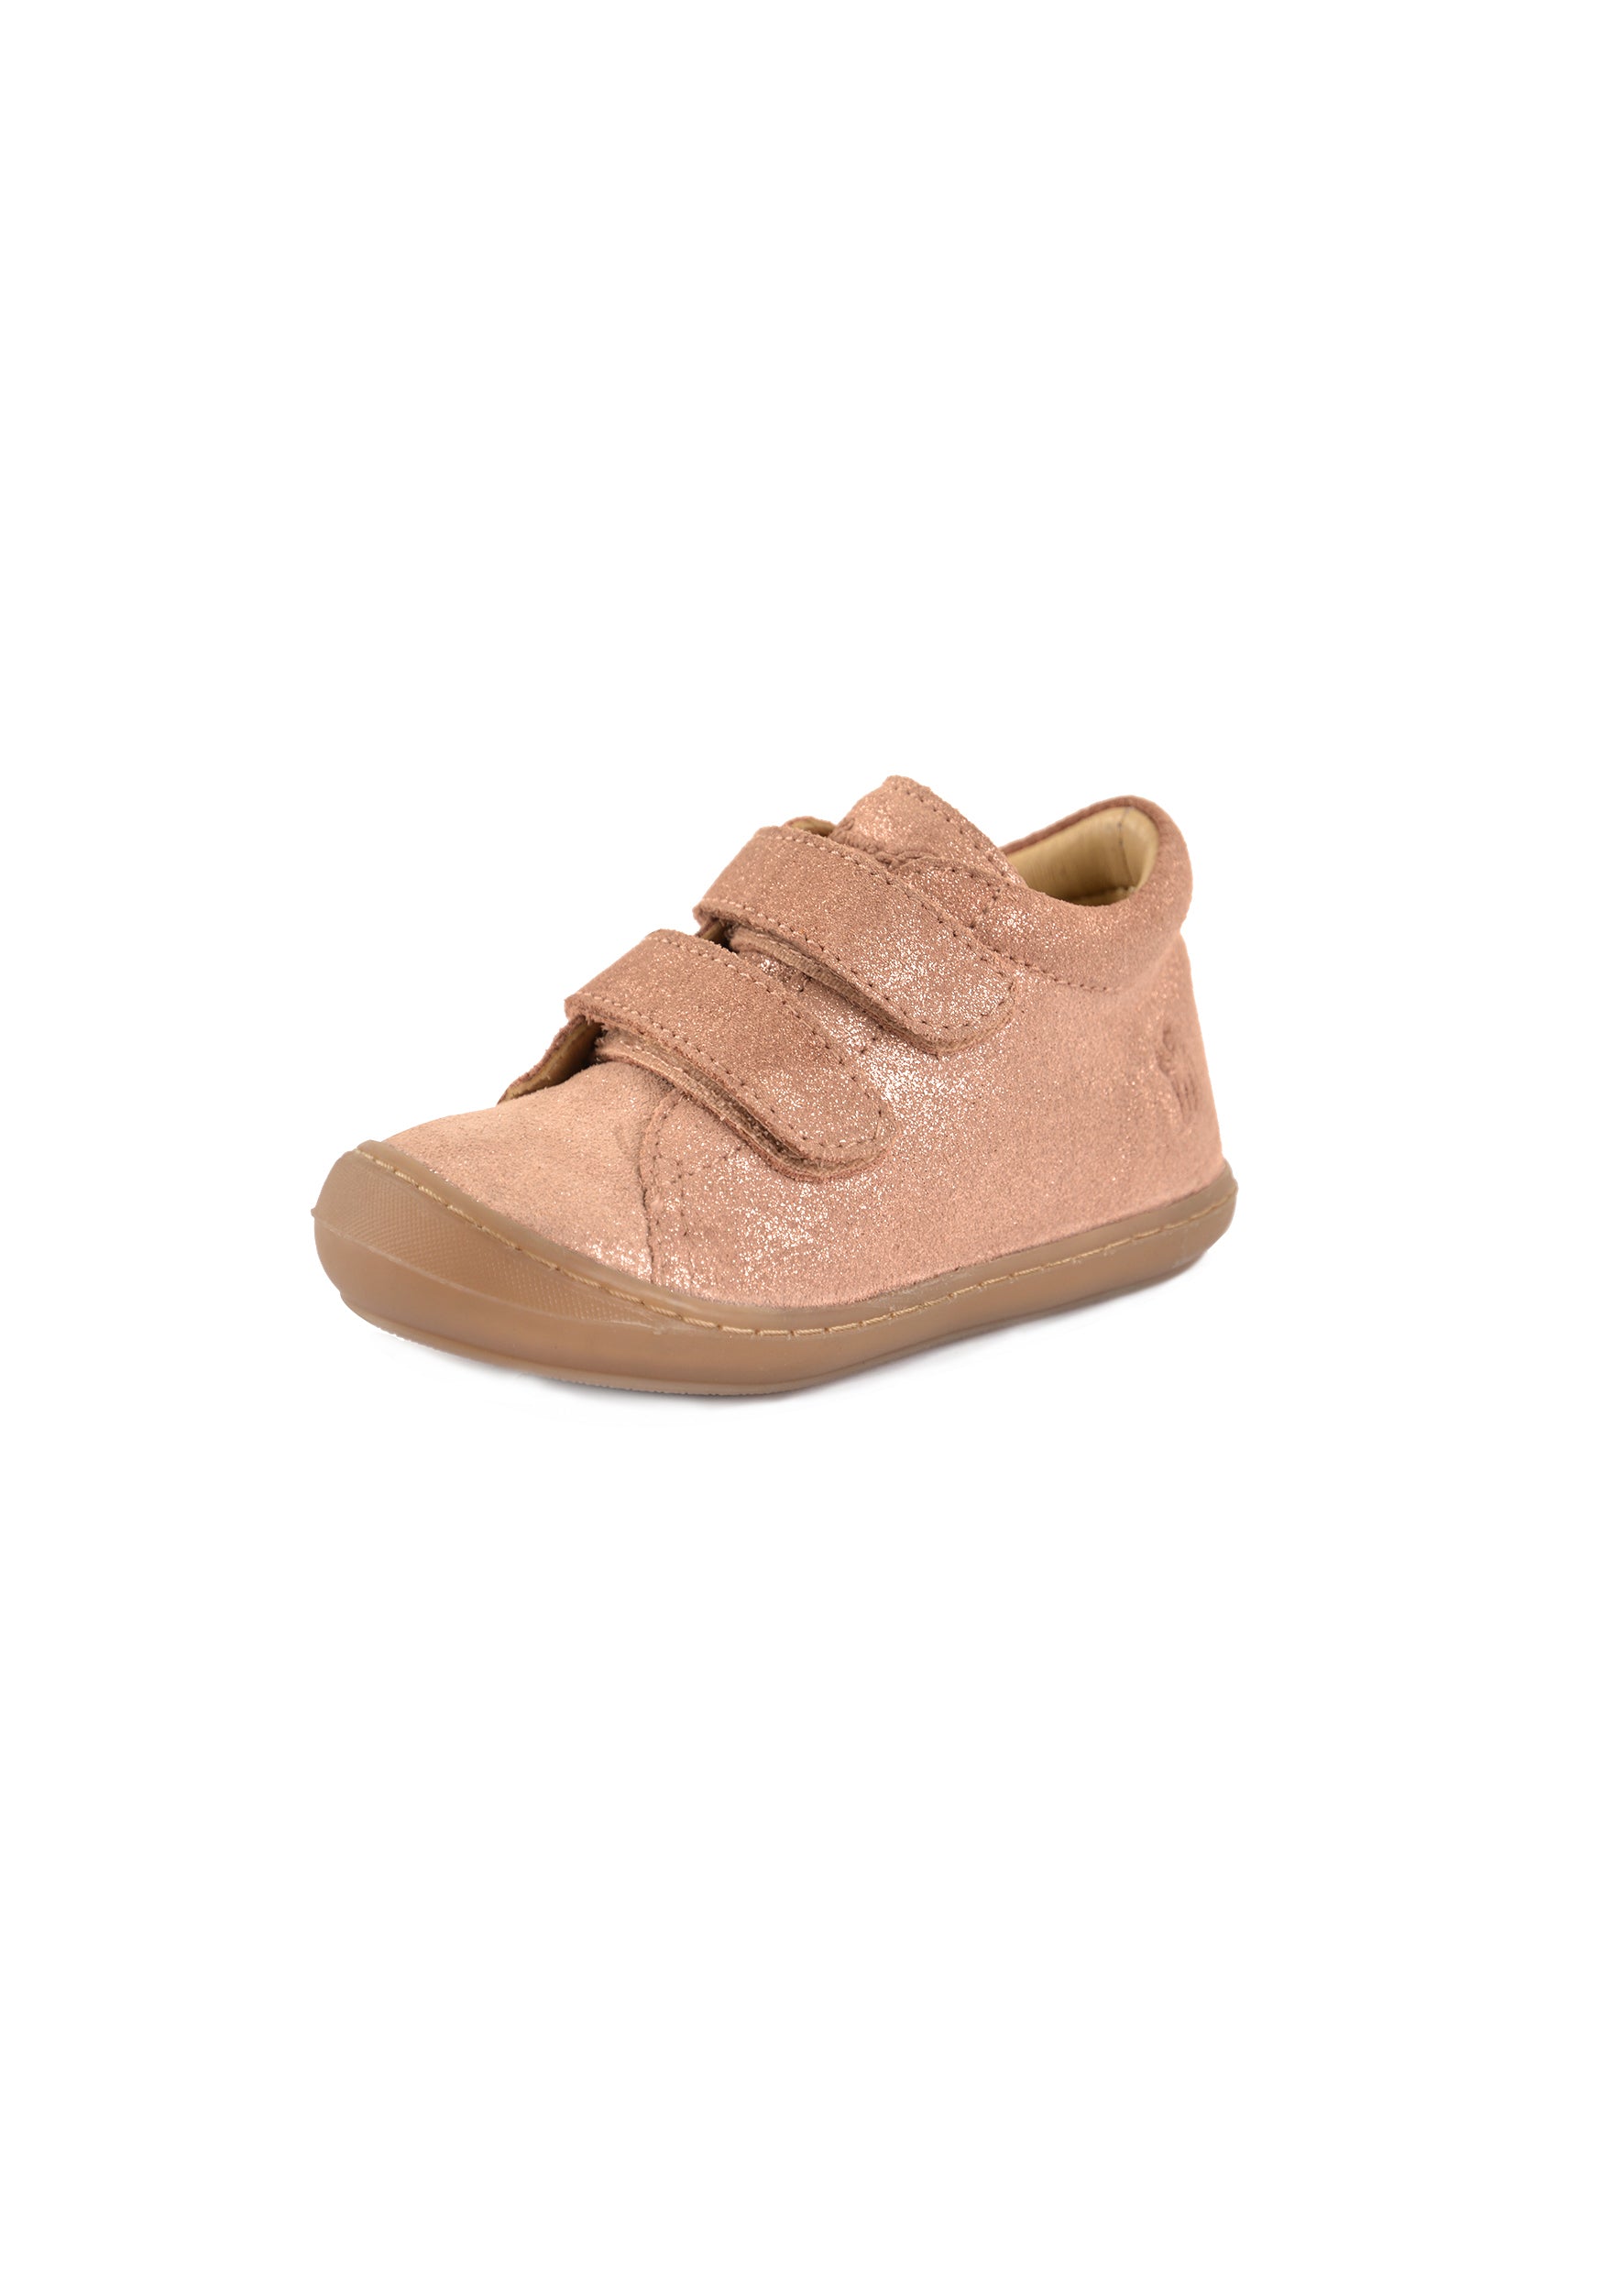 Thomas Cook Infant Nova Velcro Shoe - CLEARANCE